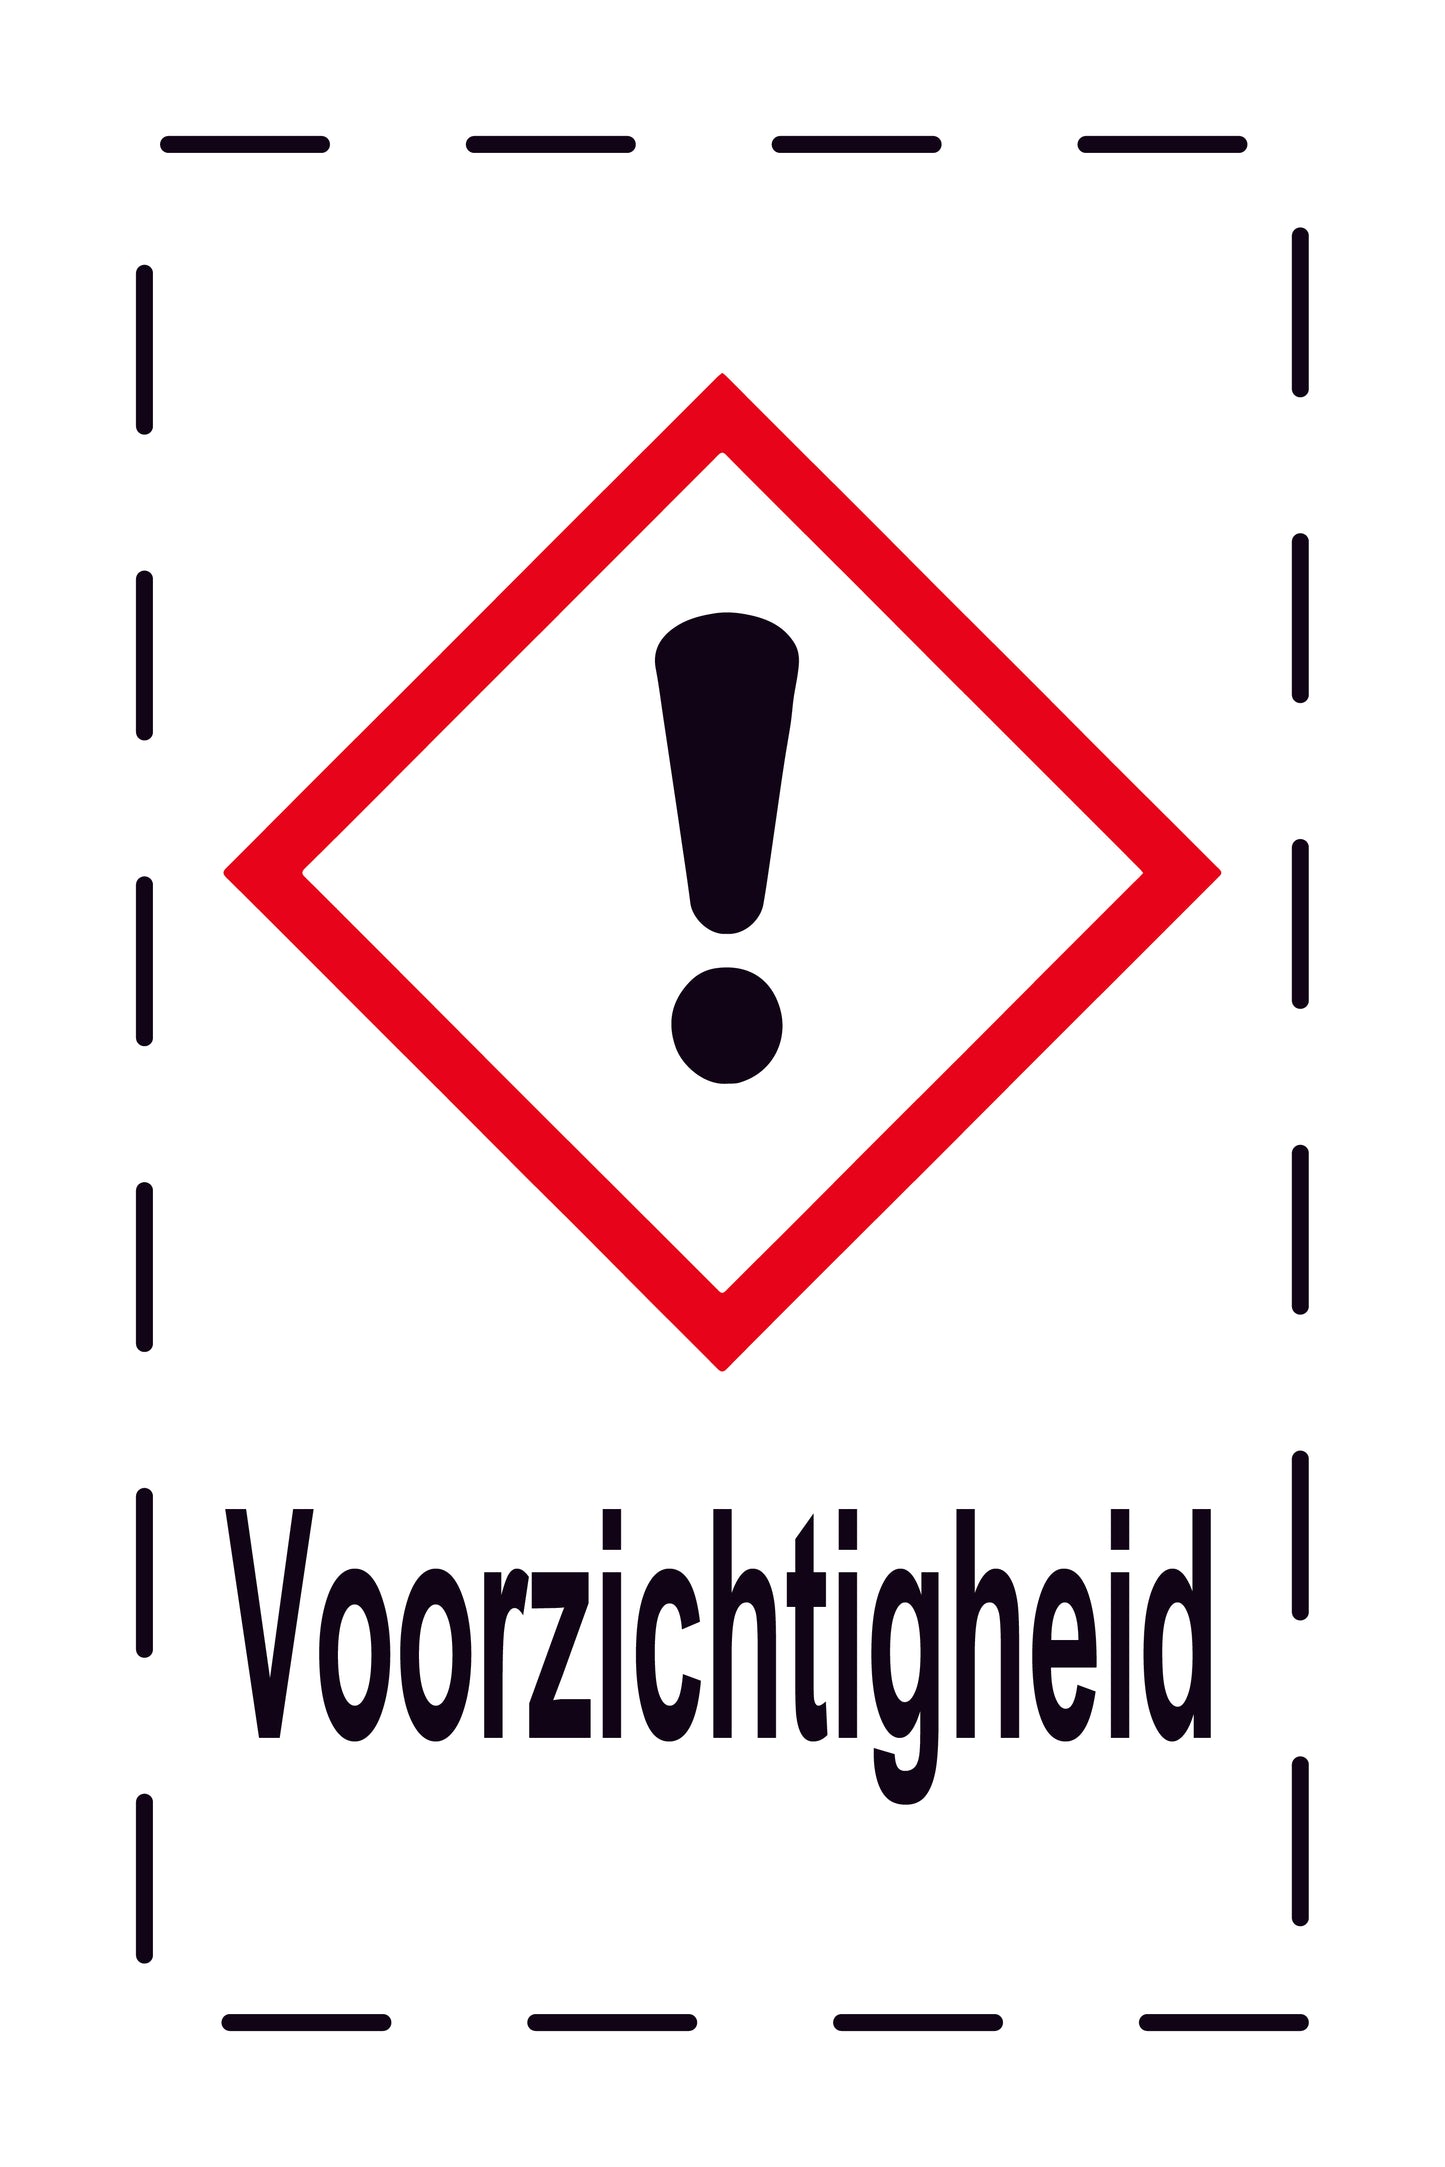 1000 stickers "Voorzichtigheid Gevaar/schadelijk/irriterende stoffen" 2,4x3,9 cm tot 15x24 cm, gemaakt van papier of kunststof EW-GHS-07-Voorzichtigheid